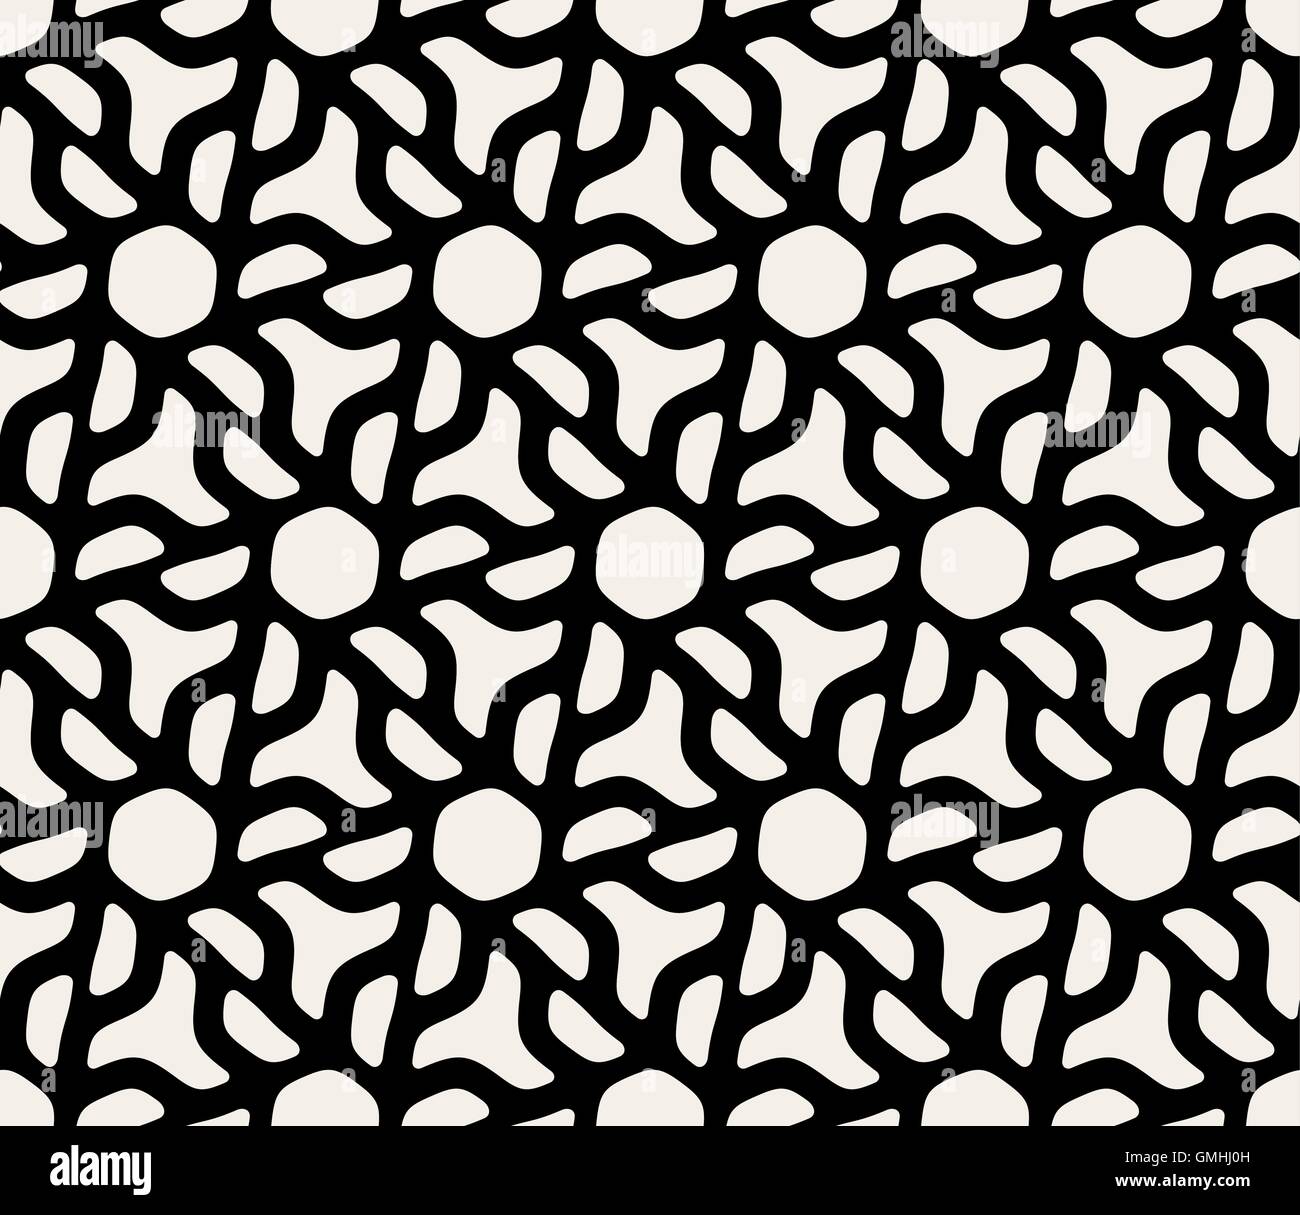 Seamless Vector Black & White Modèle Gamme arrondie hexagonale Illustration de Vecteur